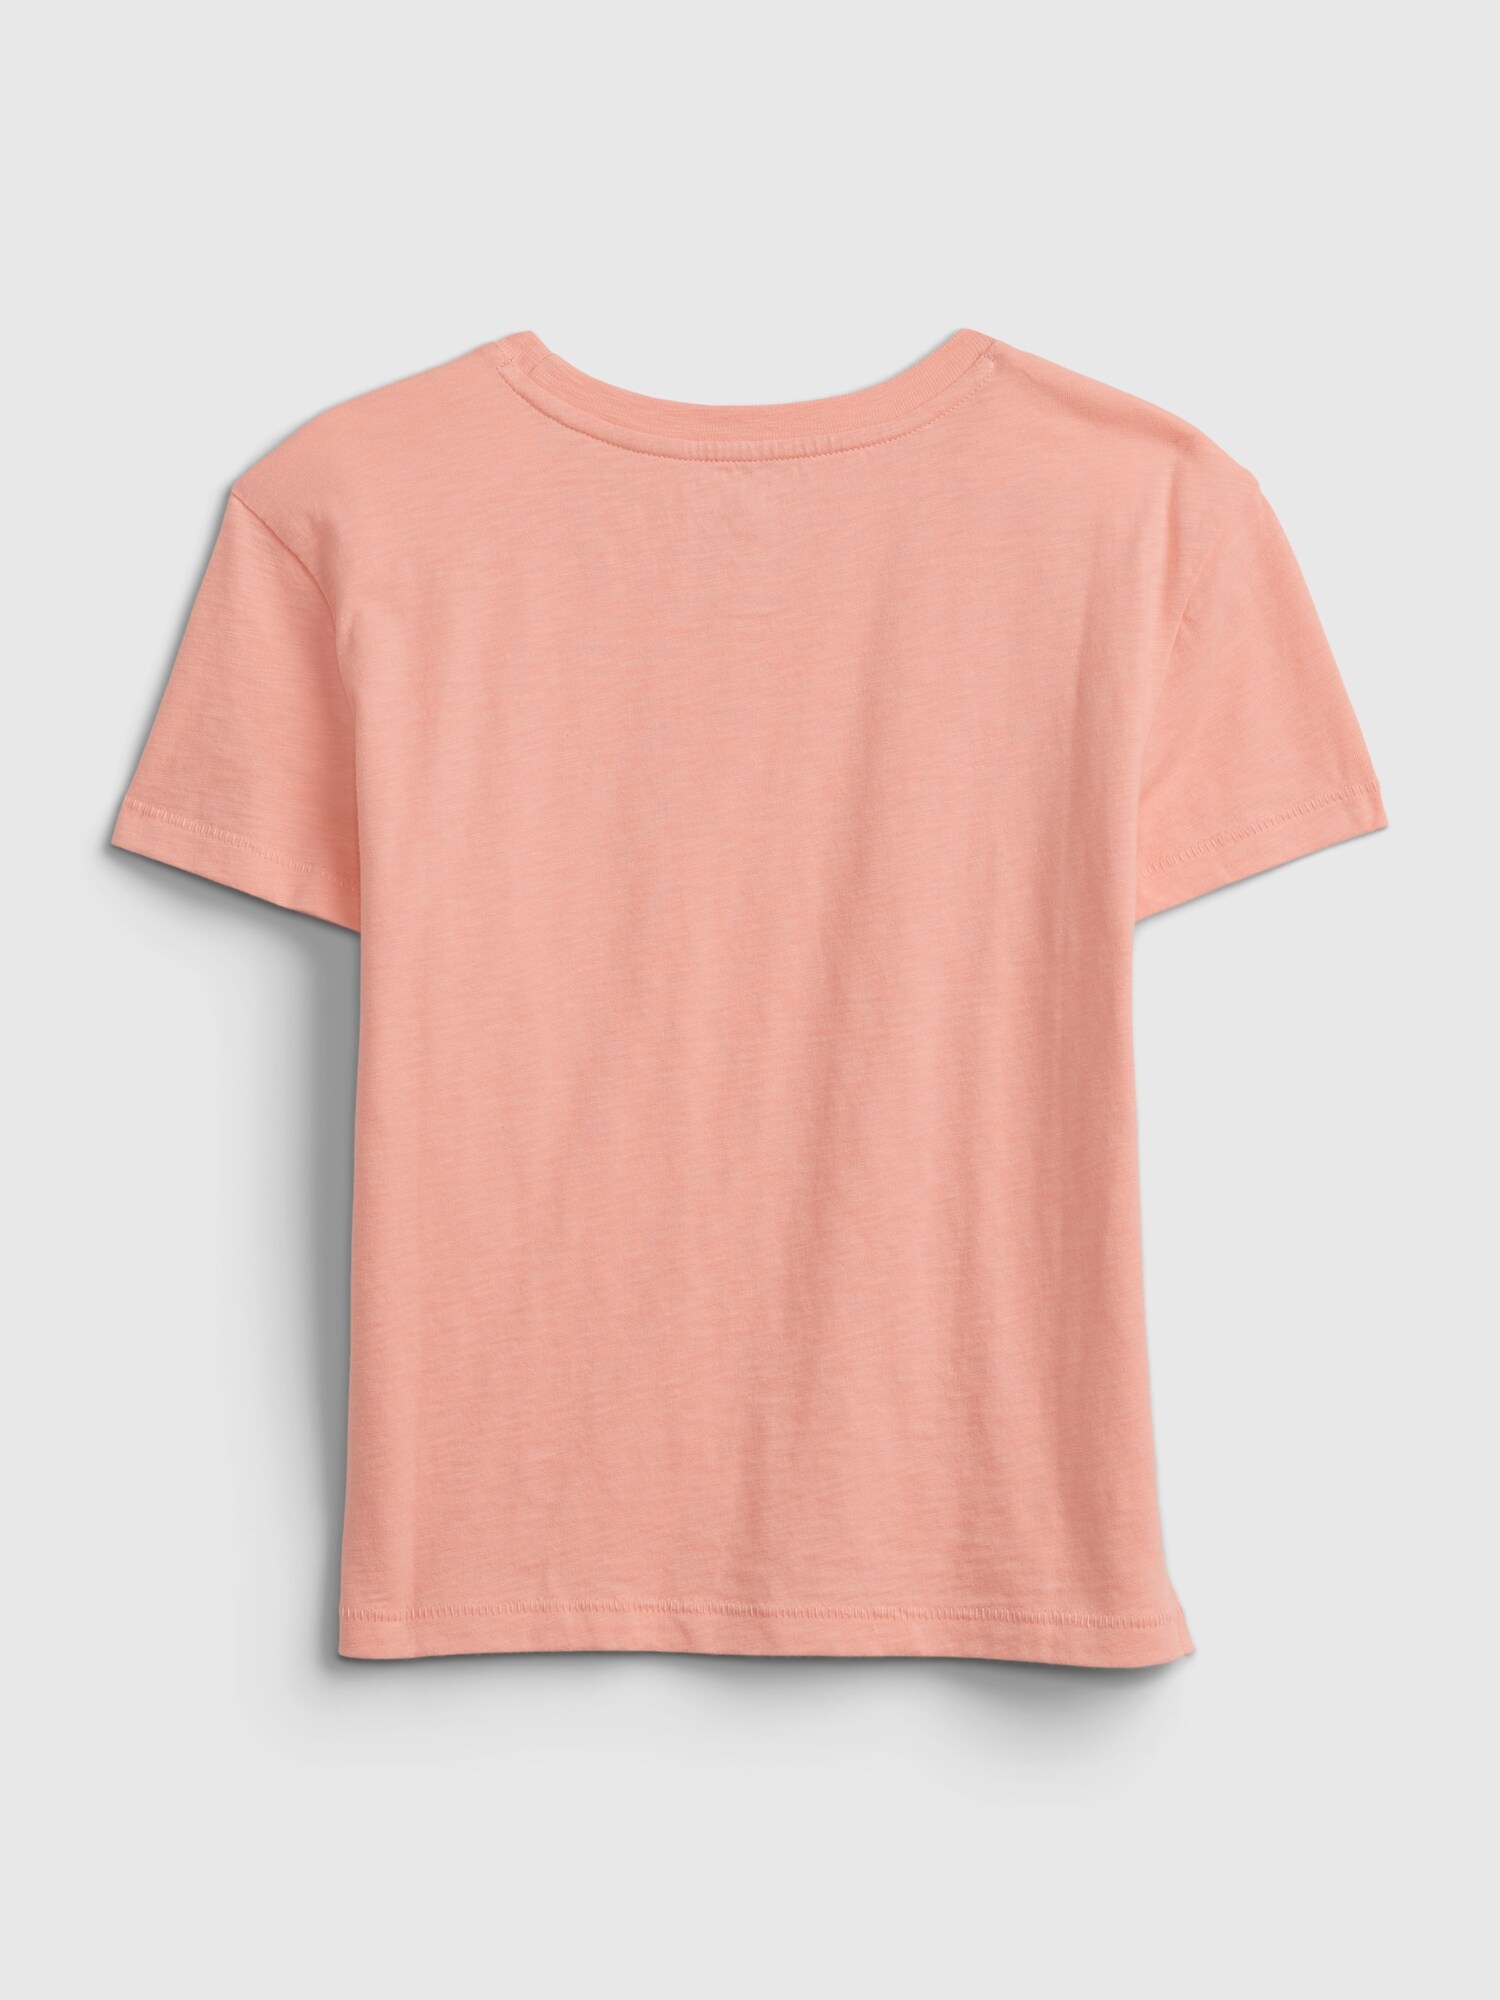 Gap公式オンラインストア | オーガニックコットン100% Tシャツ (キッズ)